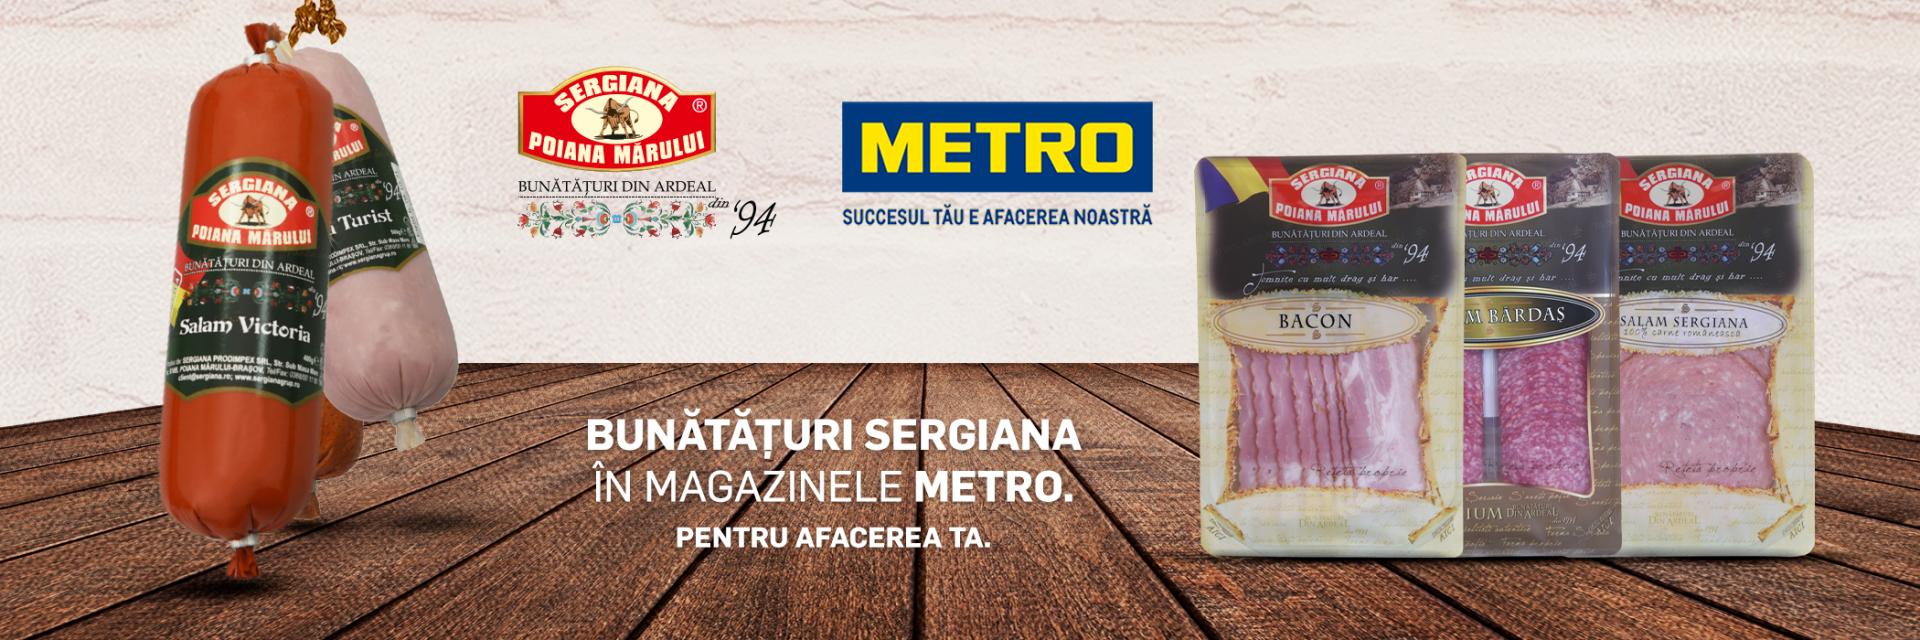 #1 - Metro